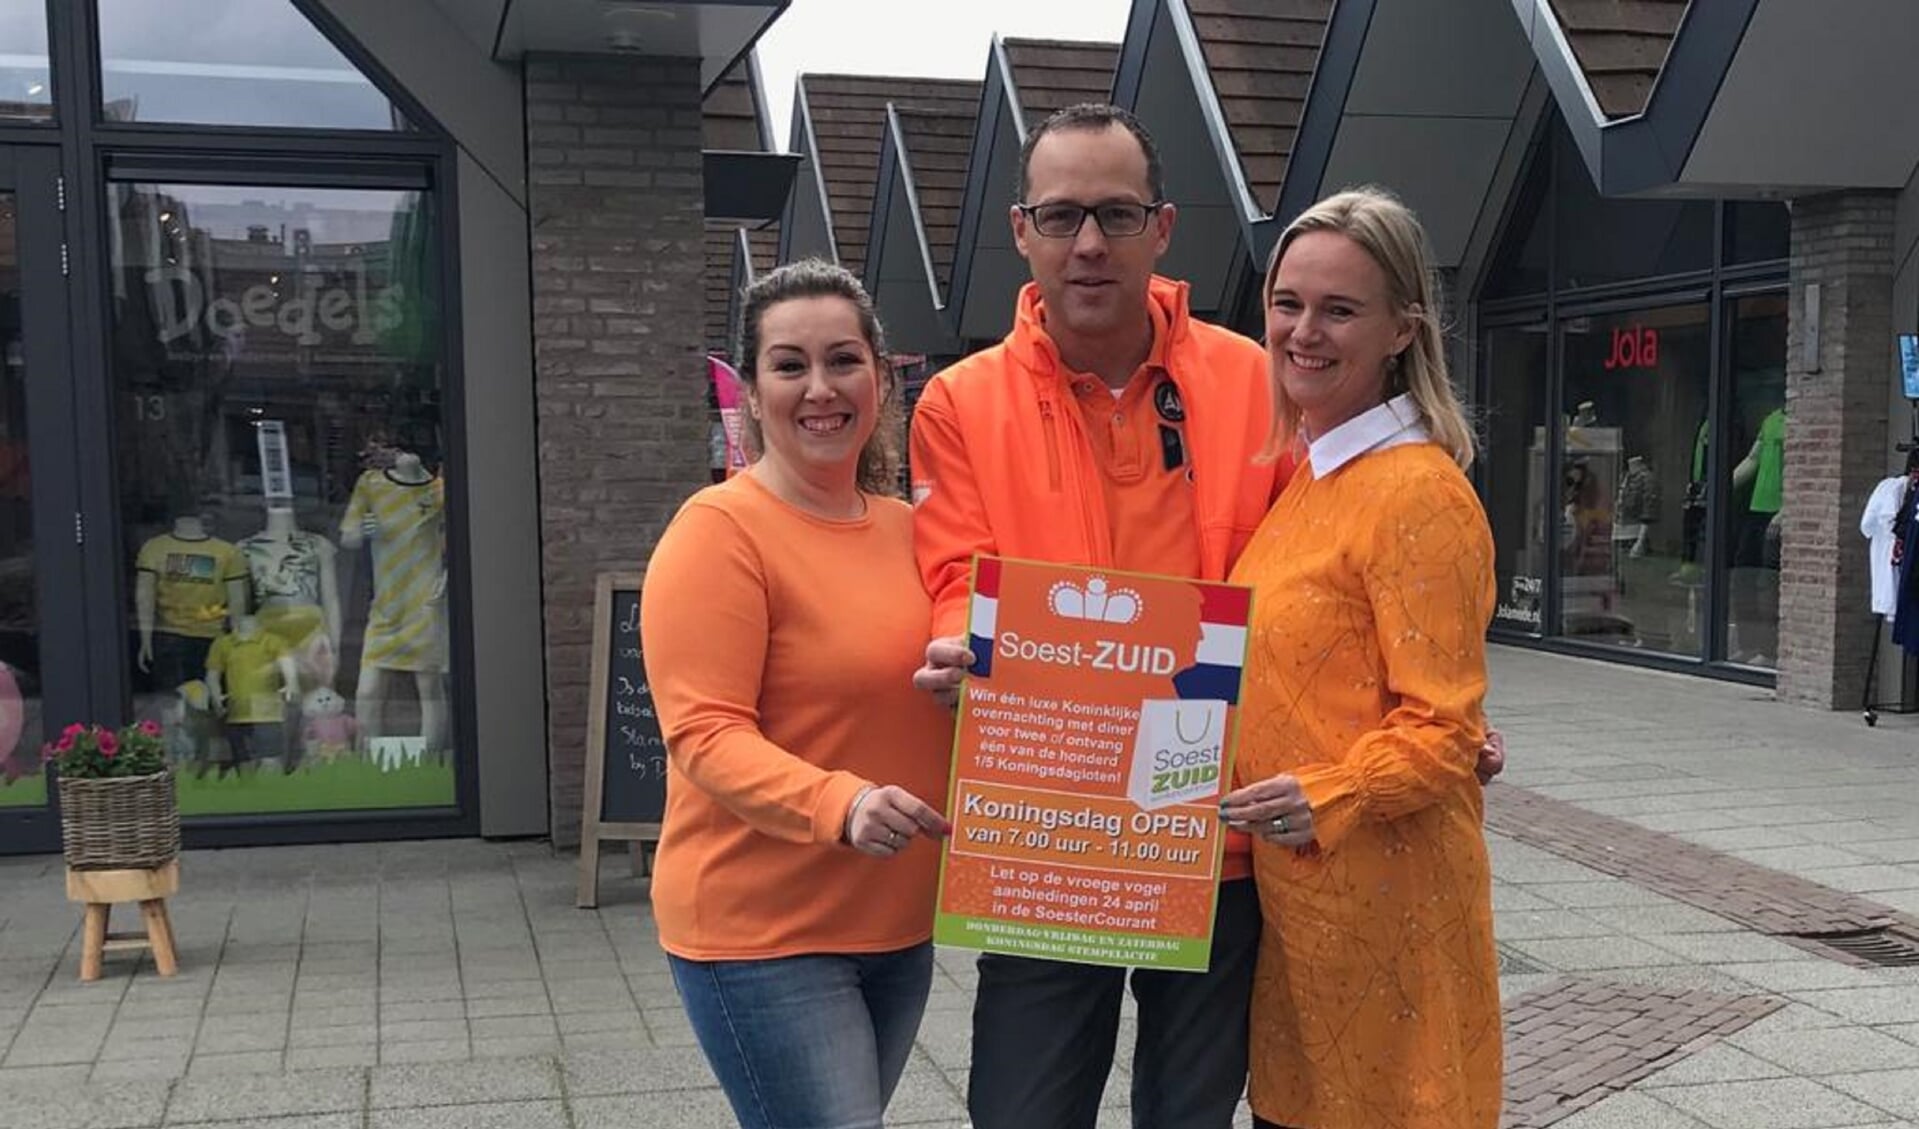 V.l.n.r.: Elena Beijer, Ronald de Beer en Esther Kok zijn startklaar voor Koningsdag in Soest-Zuid.